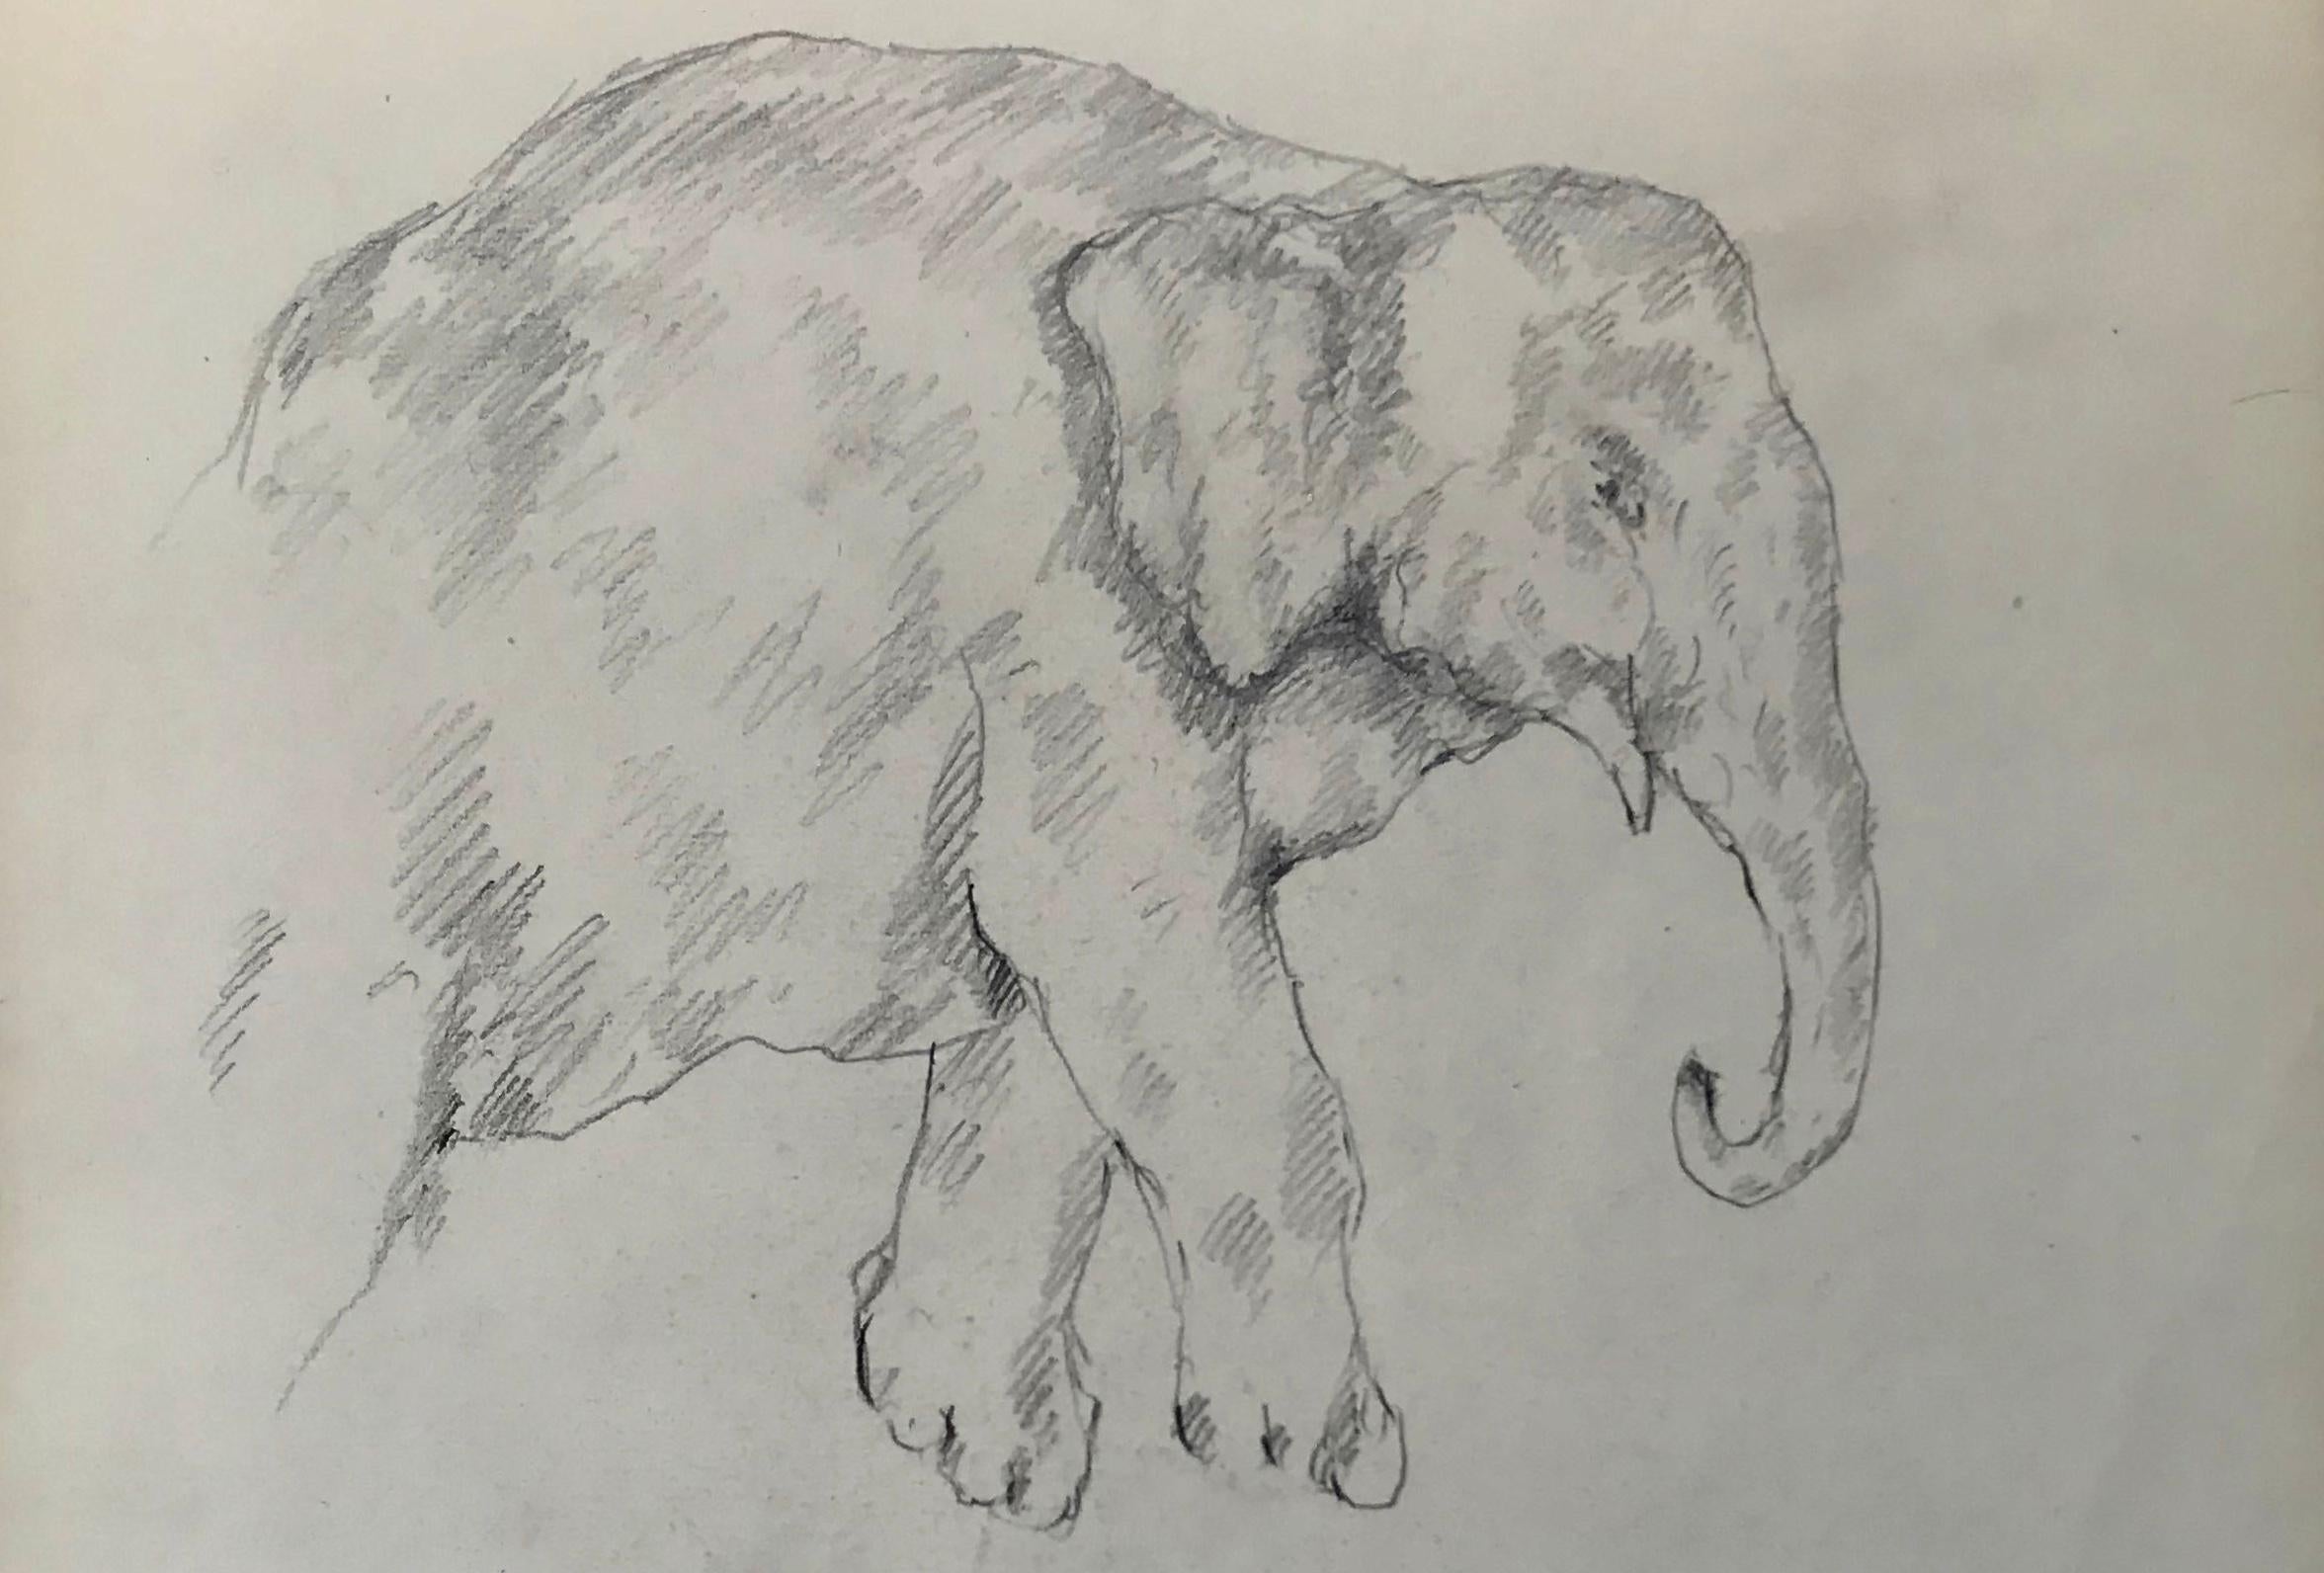 Elefantenzeichnung, Guido Righetti, 1919. Originale italienische Bleistiftzeichnungen/Skizzen eines Elefanten in verschiedenen Posen aus einer Serie, die Righetti für seine Bronzeskulpturen anfertigte, darunter ein Wildschwein, ein Elefant, ein